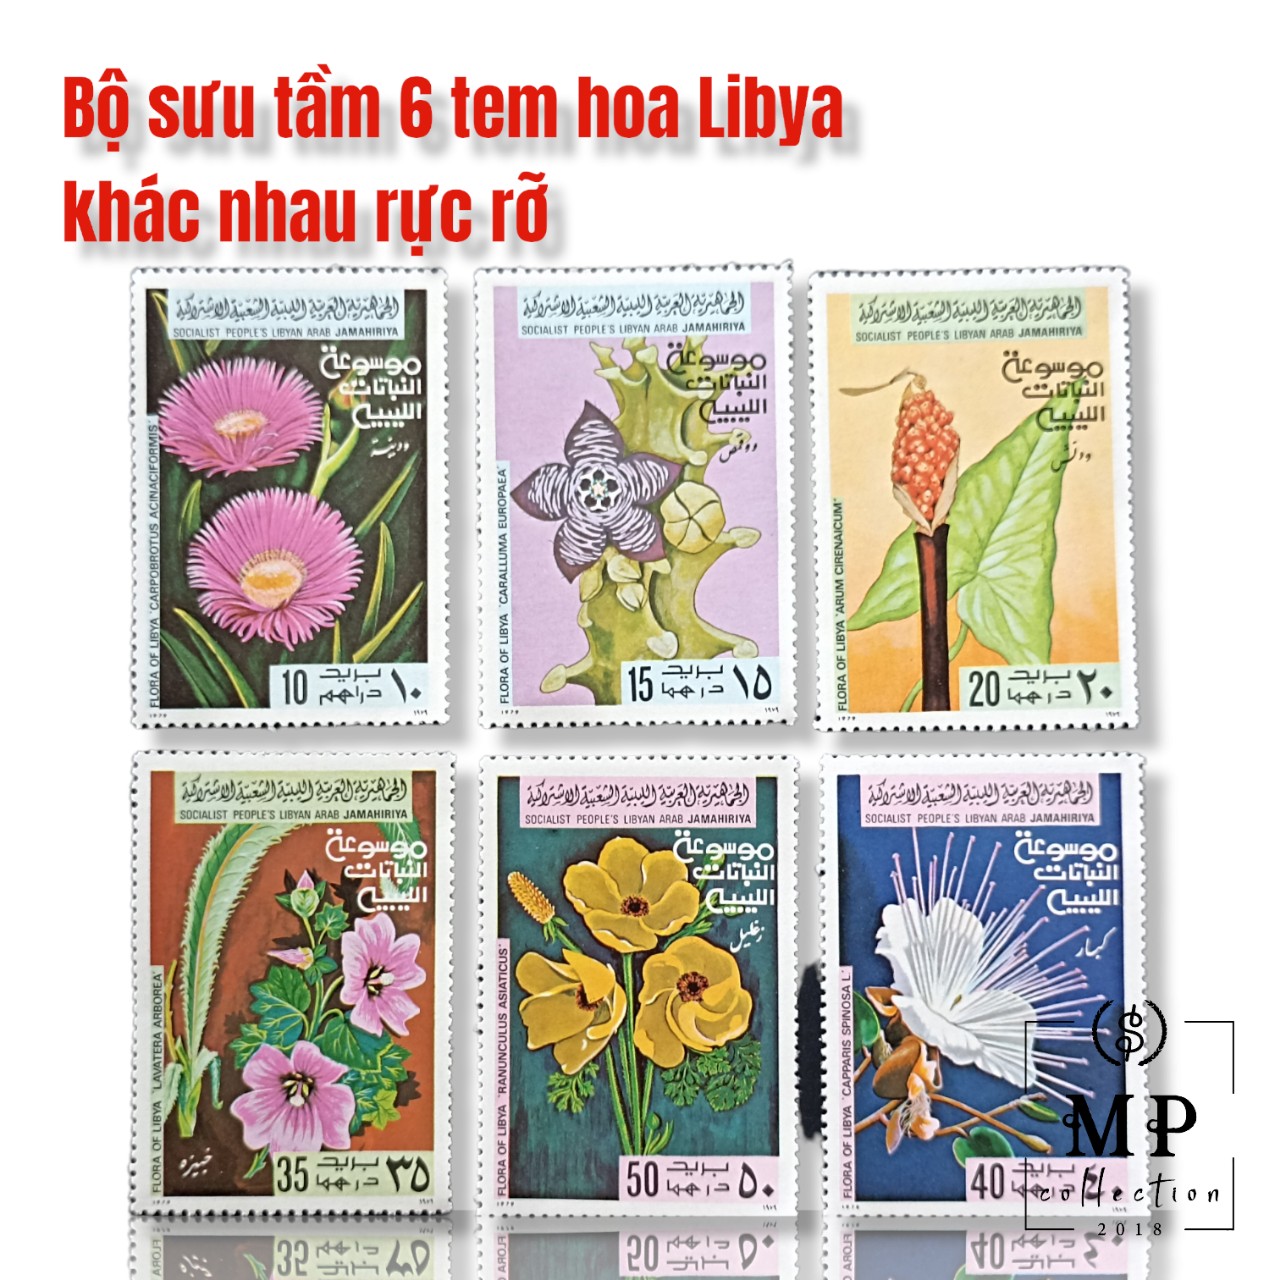 Bộ sưu tầm 6 tem hoa Libya khác nhau rực rỡ.